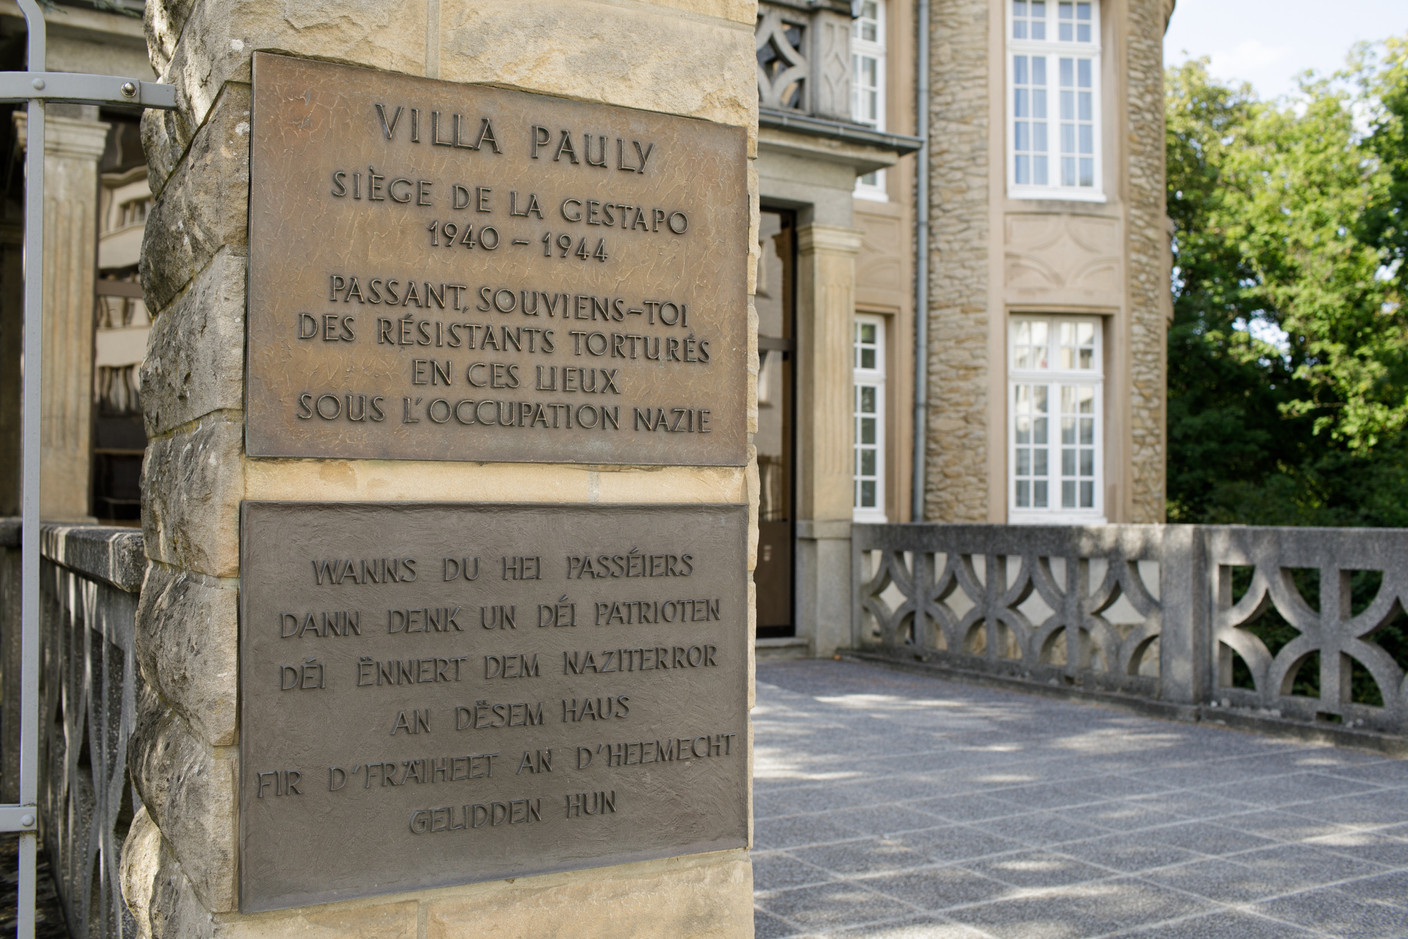 Il a fallu attendre 2016 pour que l’extérieur du bâtiment reconnaisse la déportation des Juifs du Luxembourg organisée depuis la Villa Pauly. (Photo: Matic Zorman/Maison Moderne)